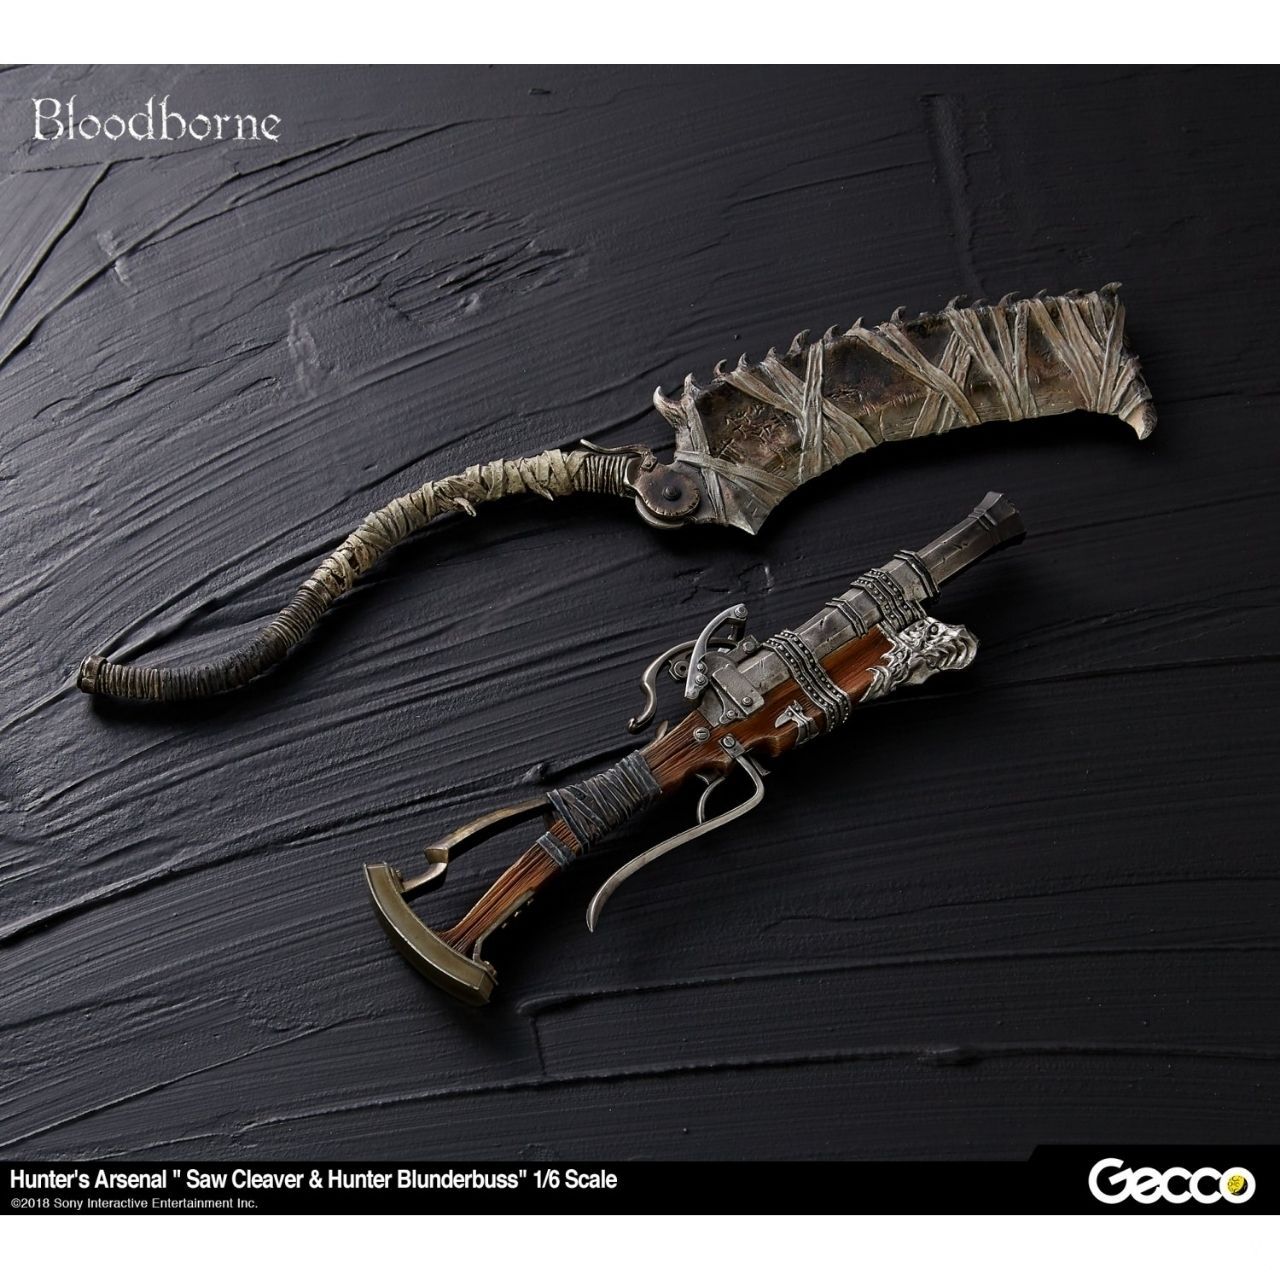 Gecco anuncia nueva figura y réplicas de armas de Bloodborne